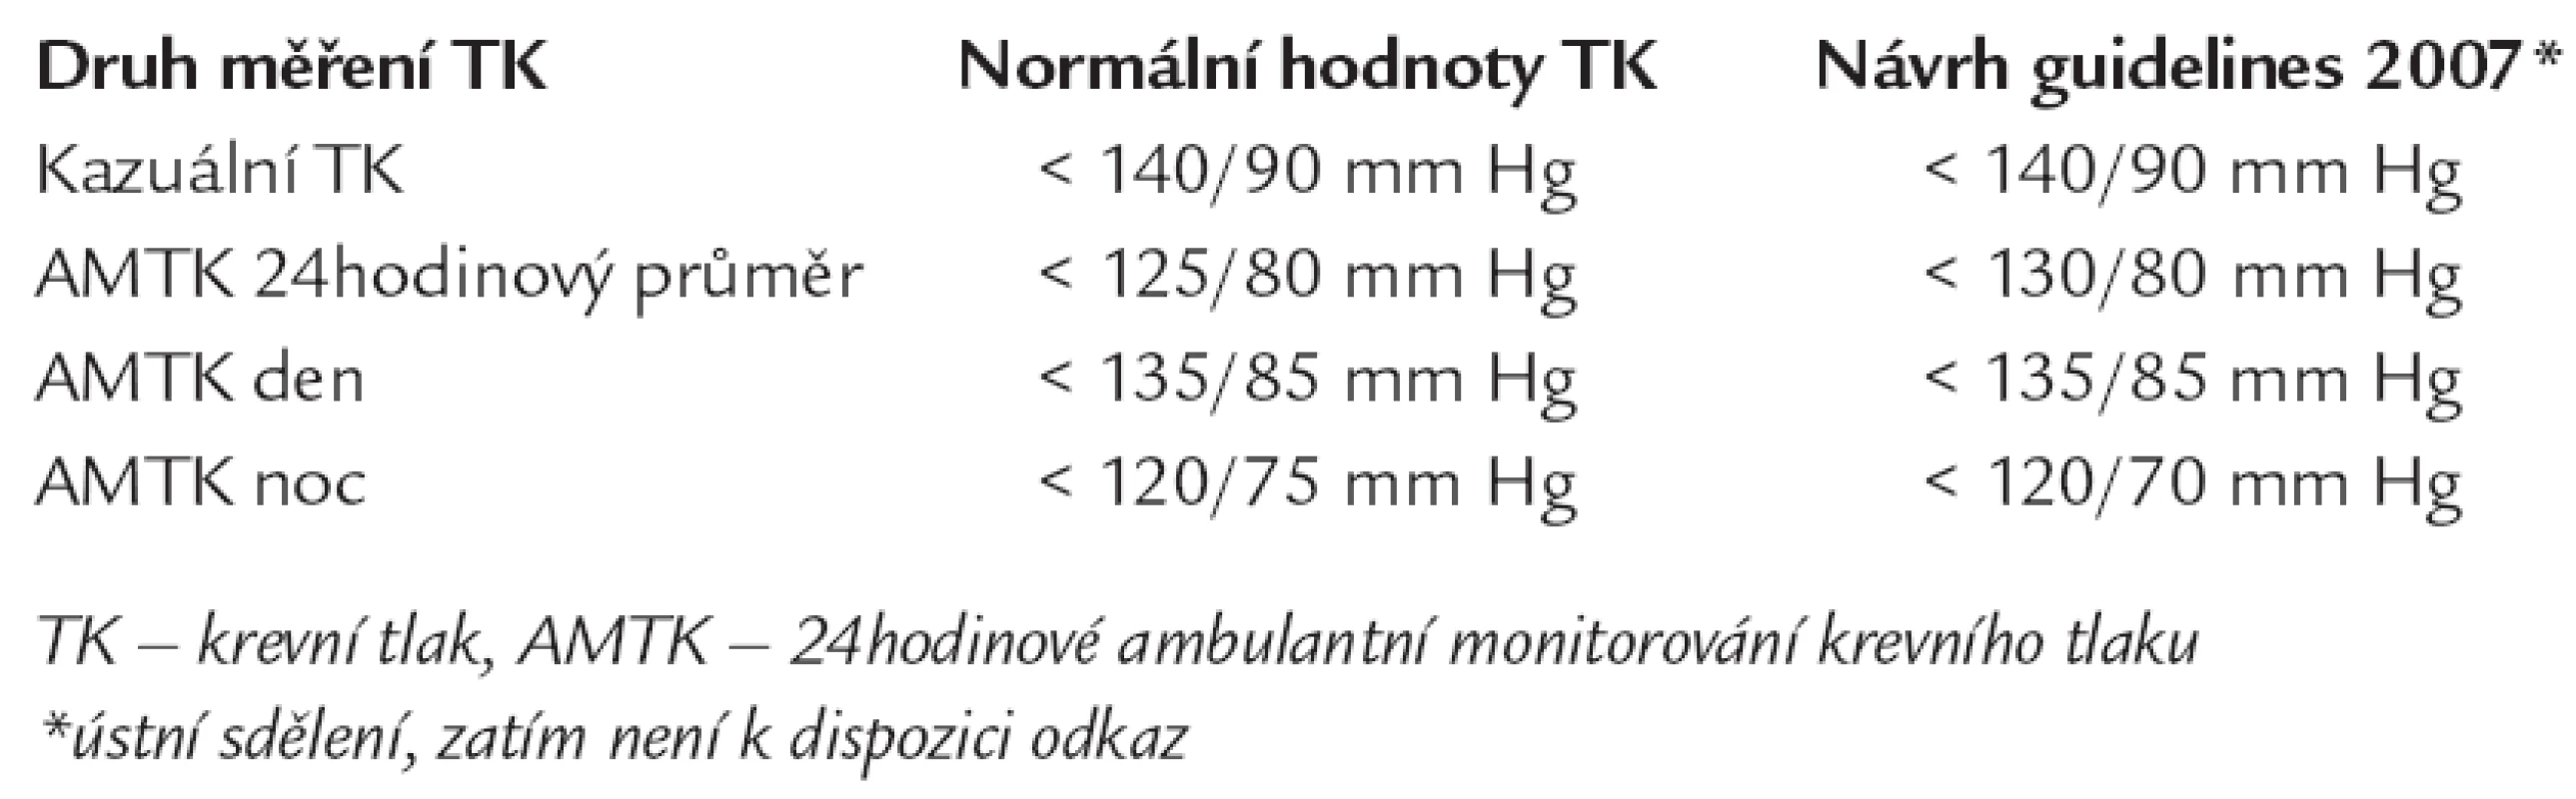 Normální hodnoty kazuálního TK a AMTK [2].